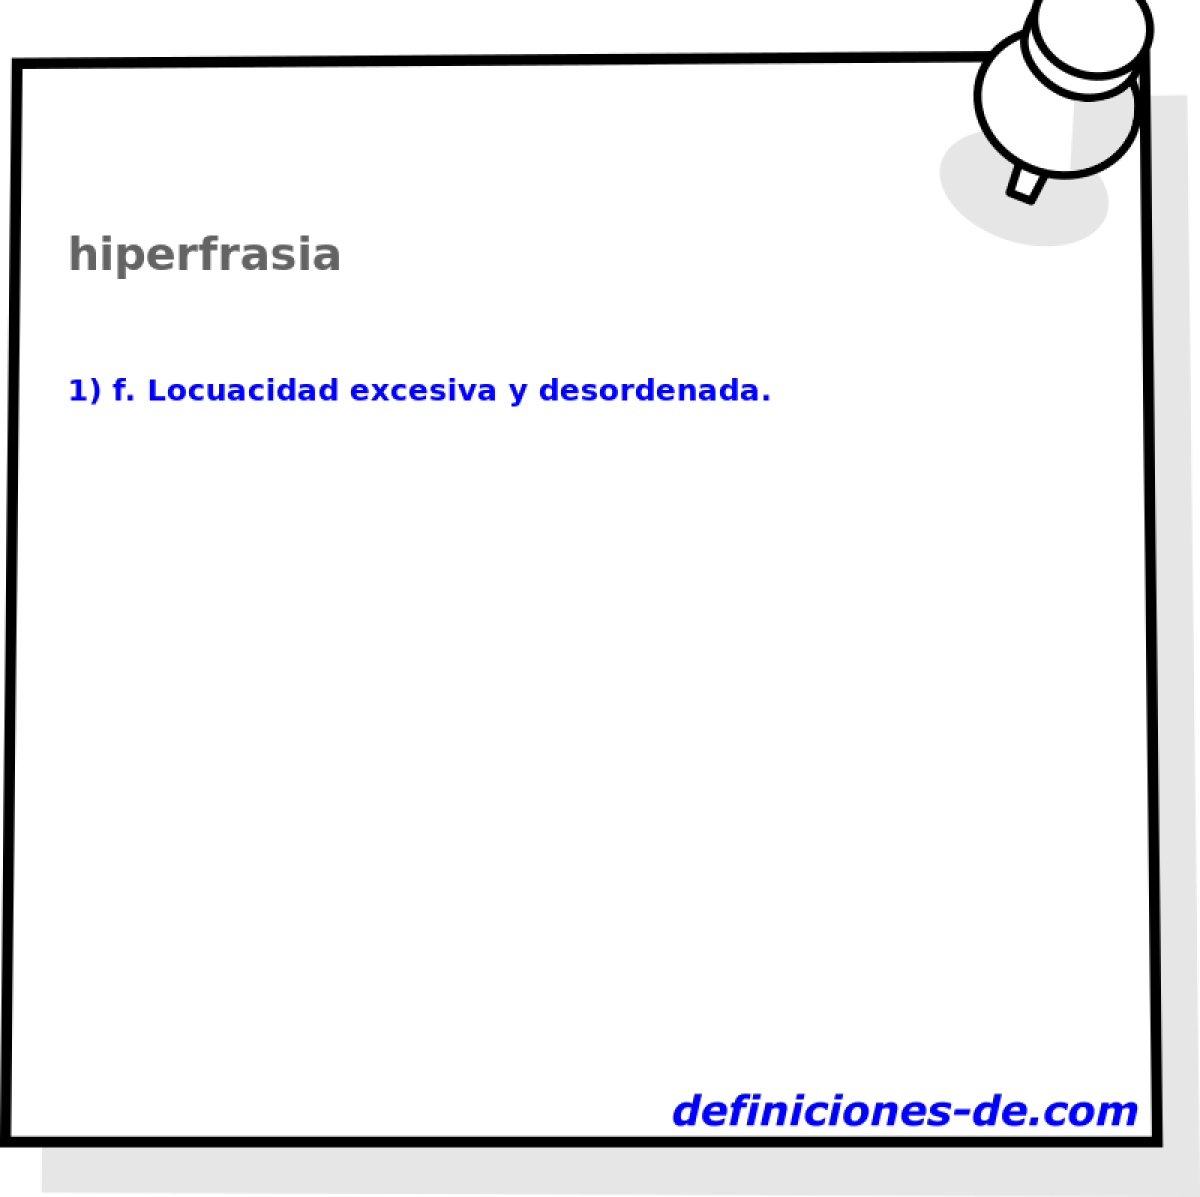 hiperfrasia 